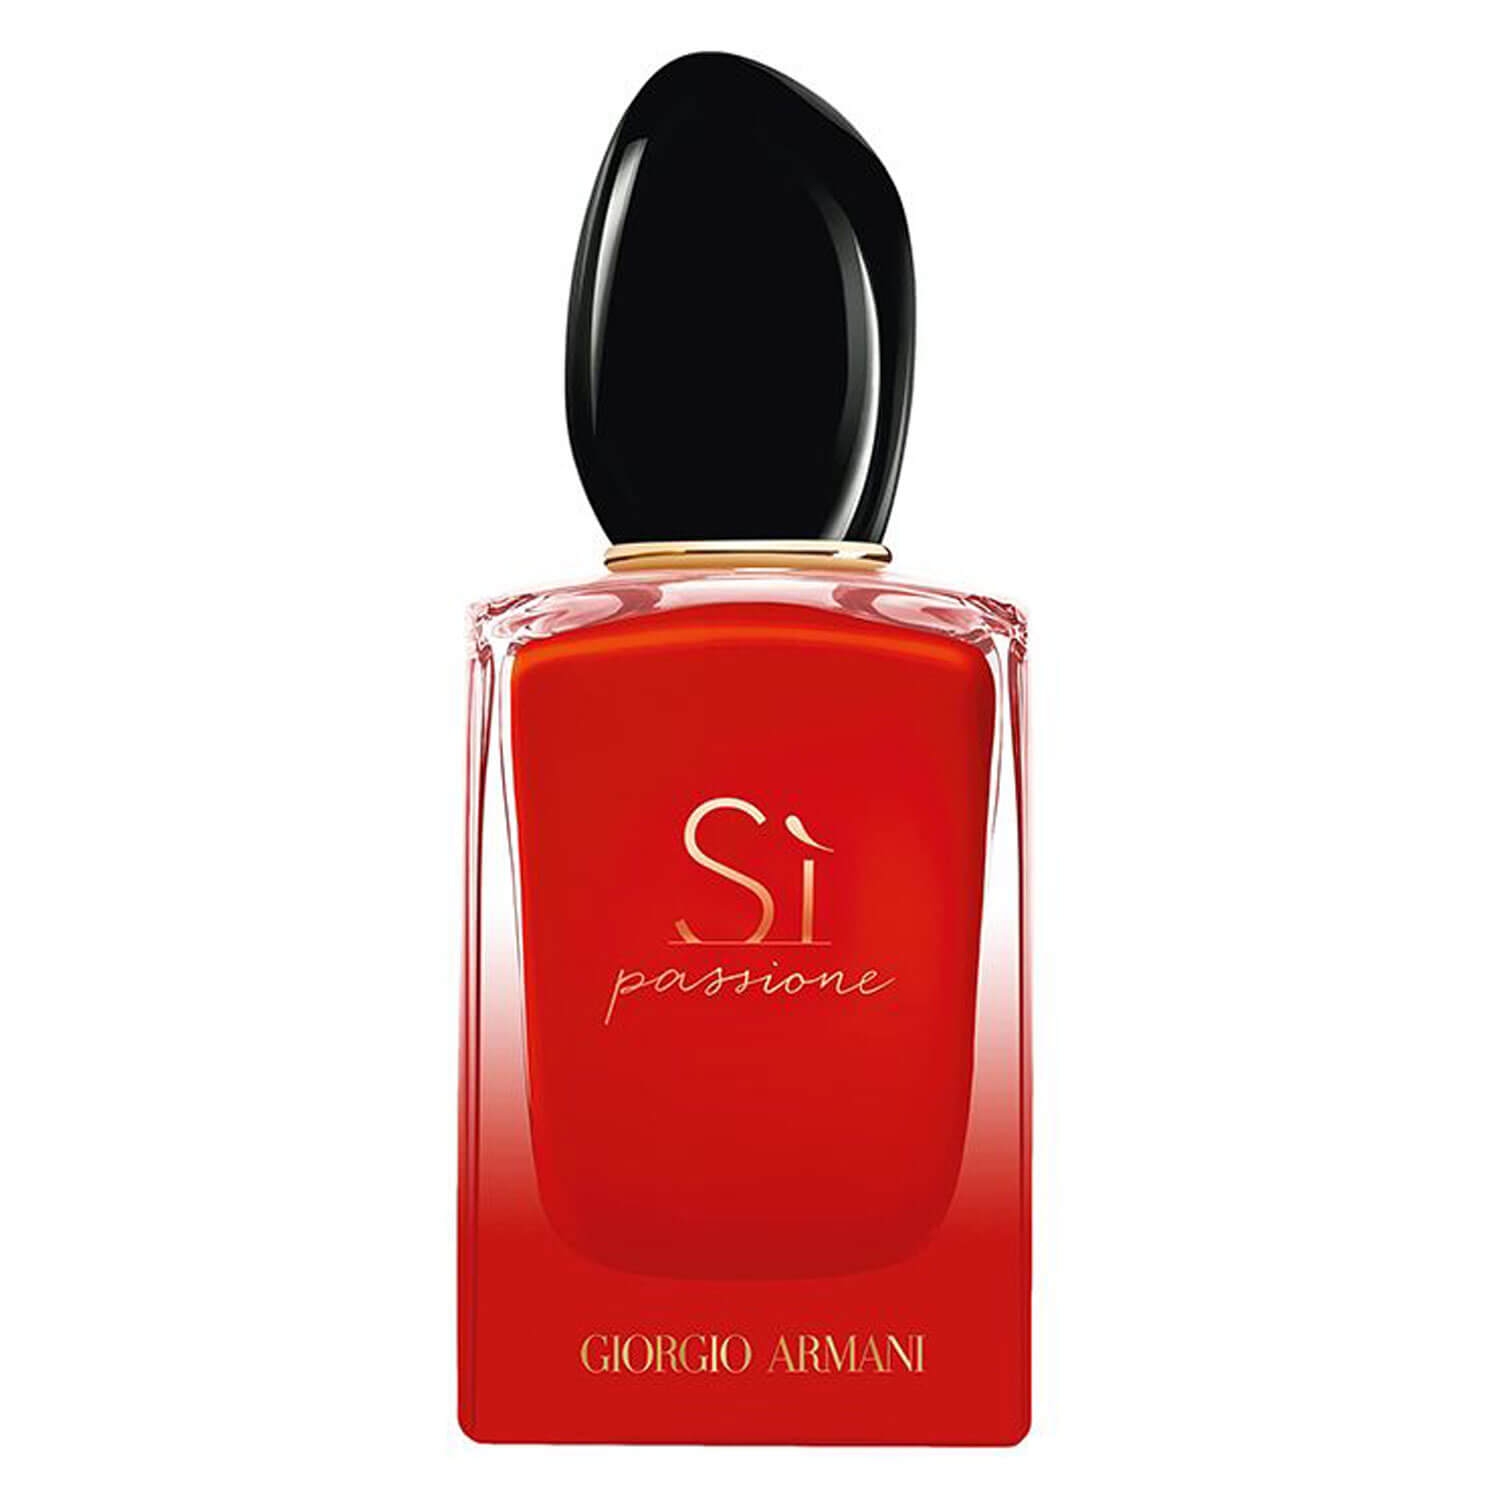 Product image from Sì - Passione Intense Eau de Parfum